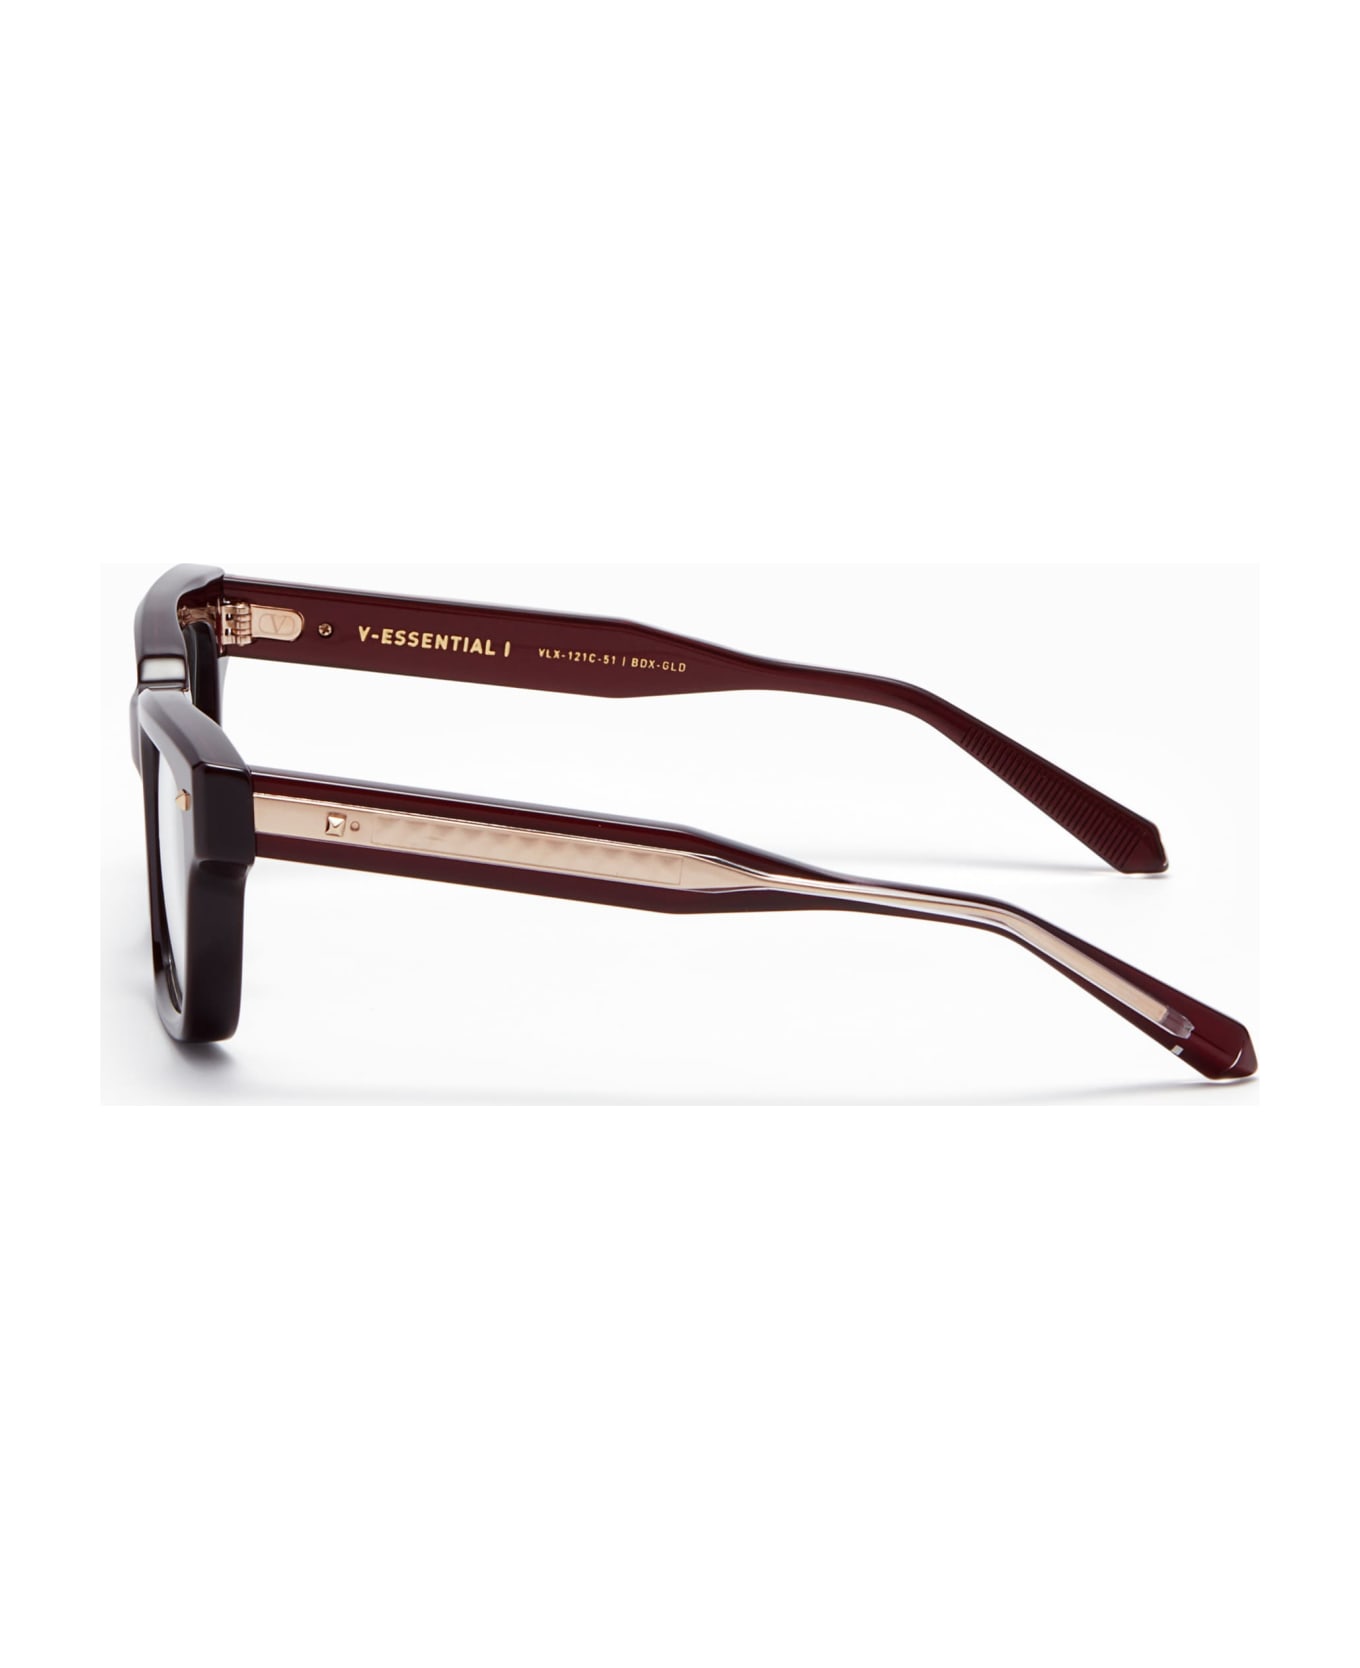 Valentino Eyewear V-essential I - Burgundy Rx Glasses - burgundy